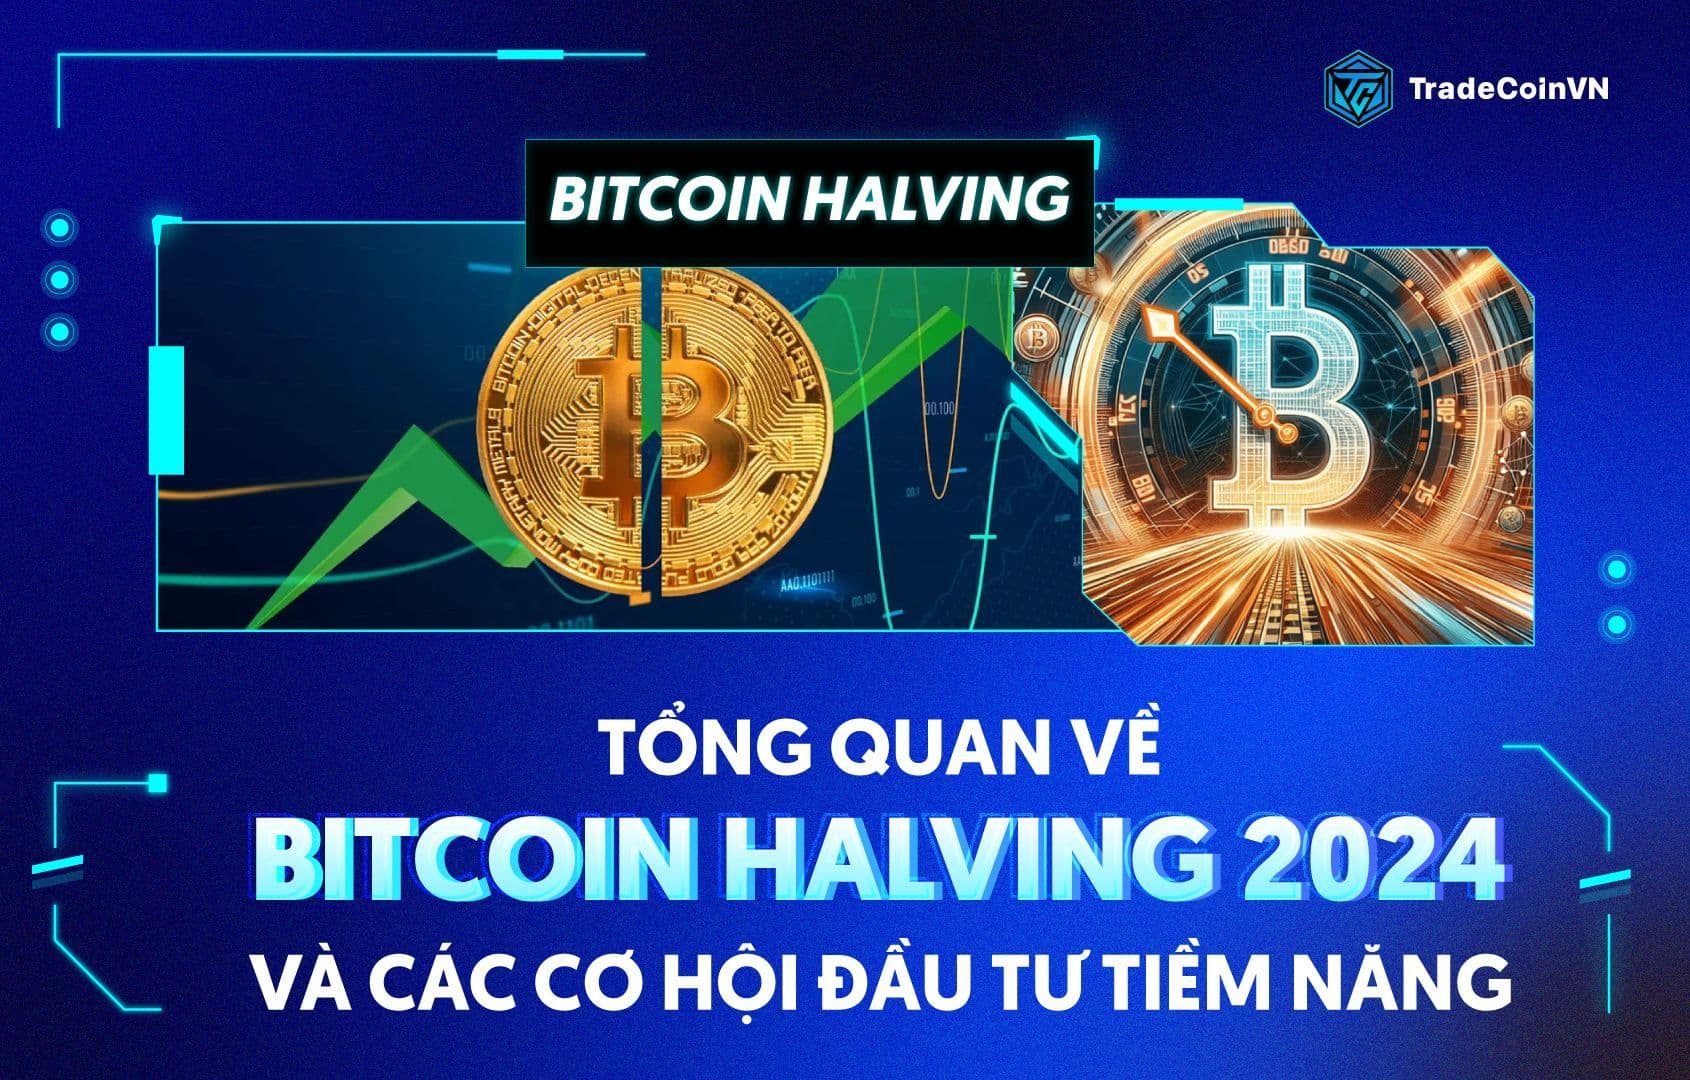 Tổng quan về Bitcoin Halving 2024 và các cơ hội đầu tư tiềm năng